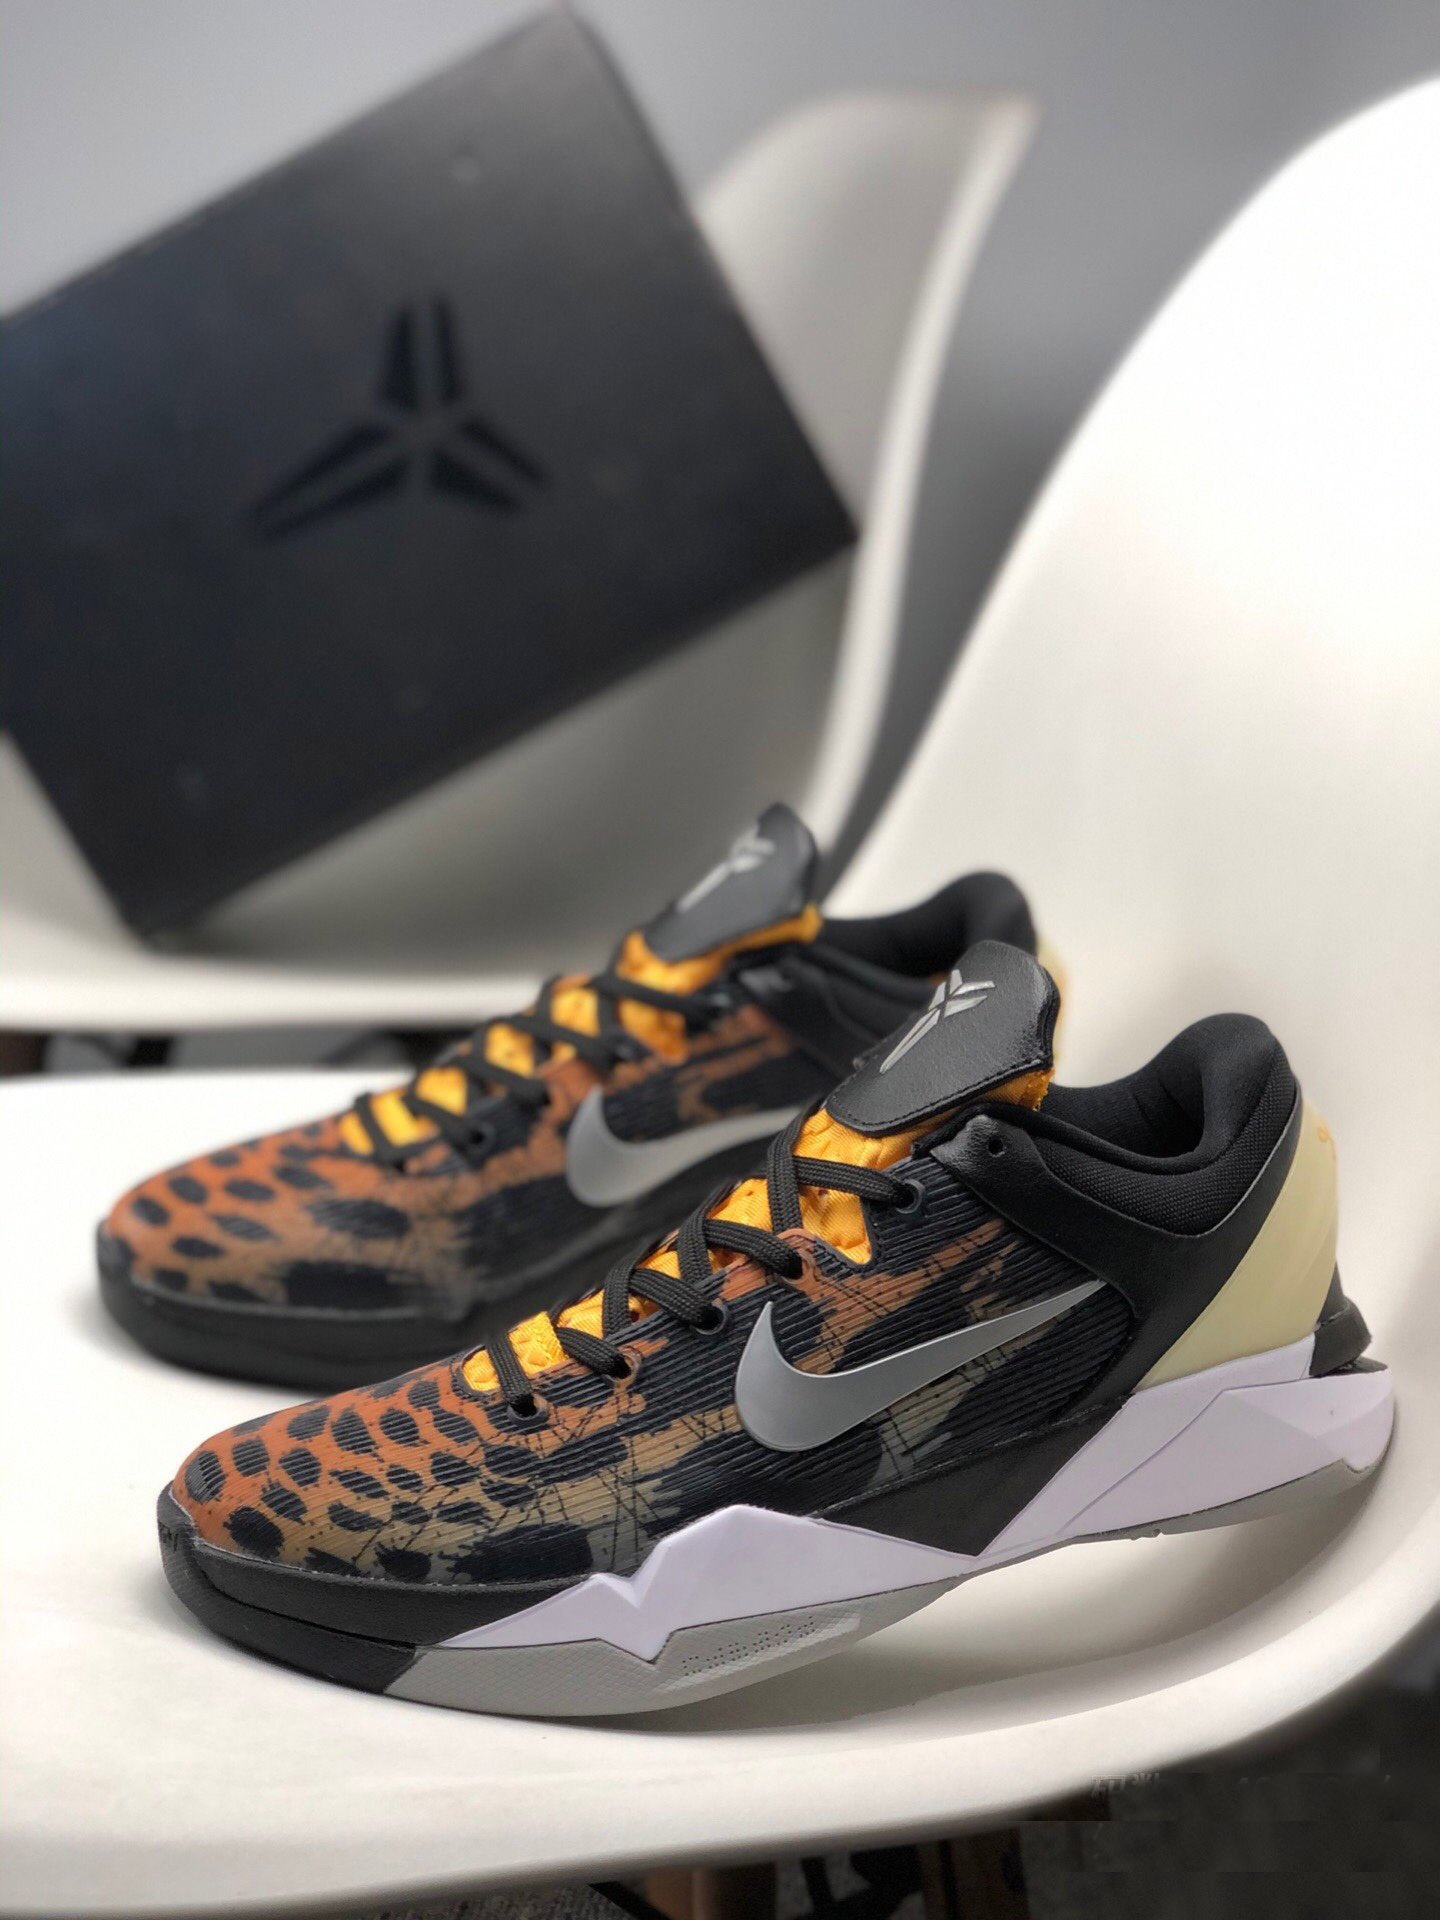 Nike Zoom Kobe 7 'Cheetah' Orange/Medium Grey-Black-Sail Shoes